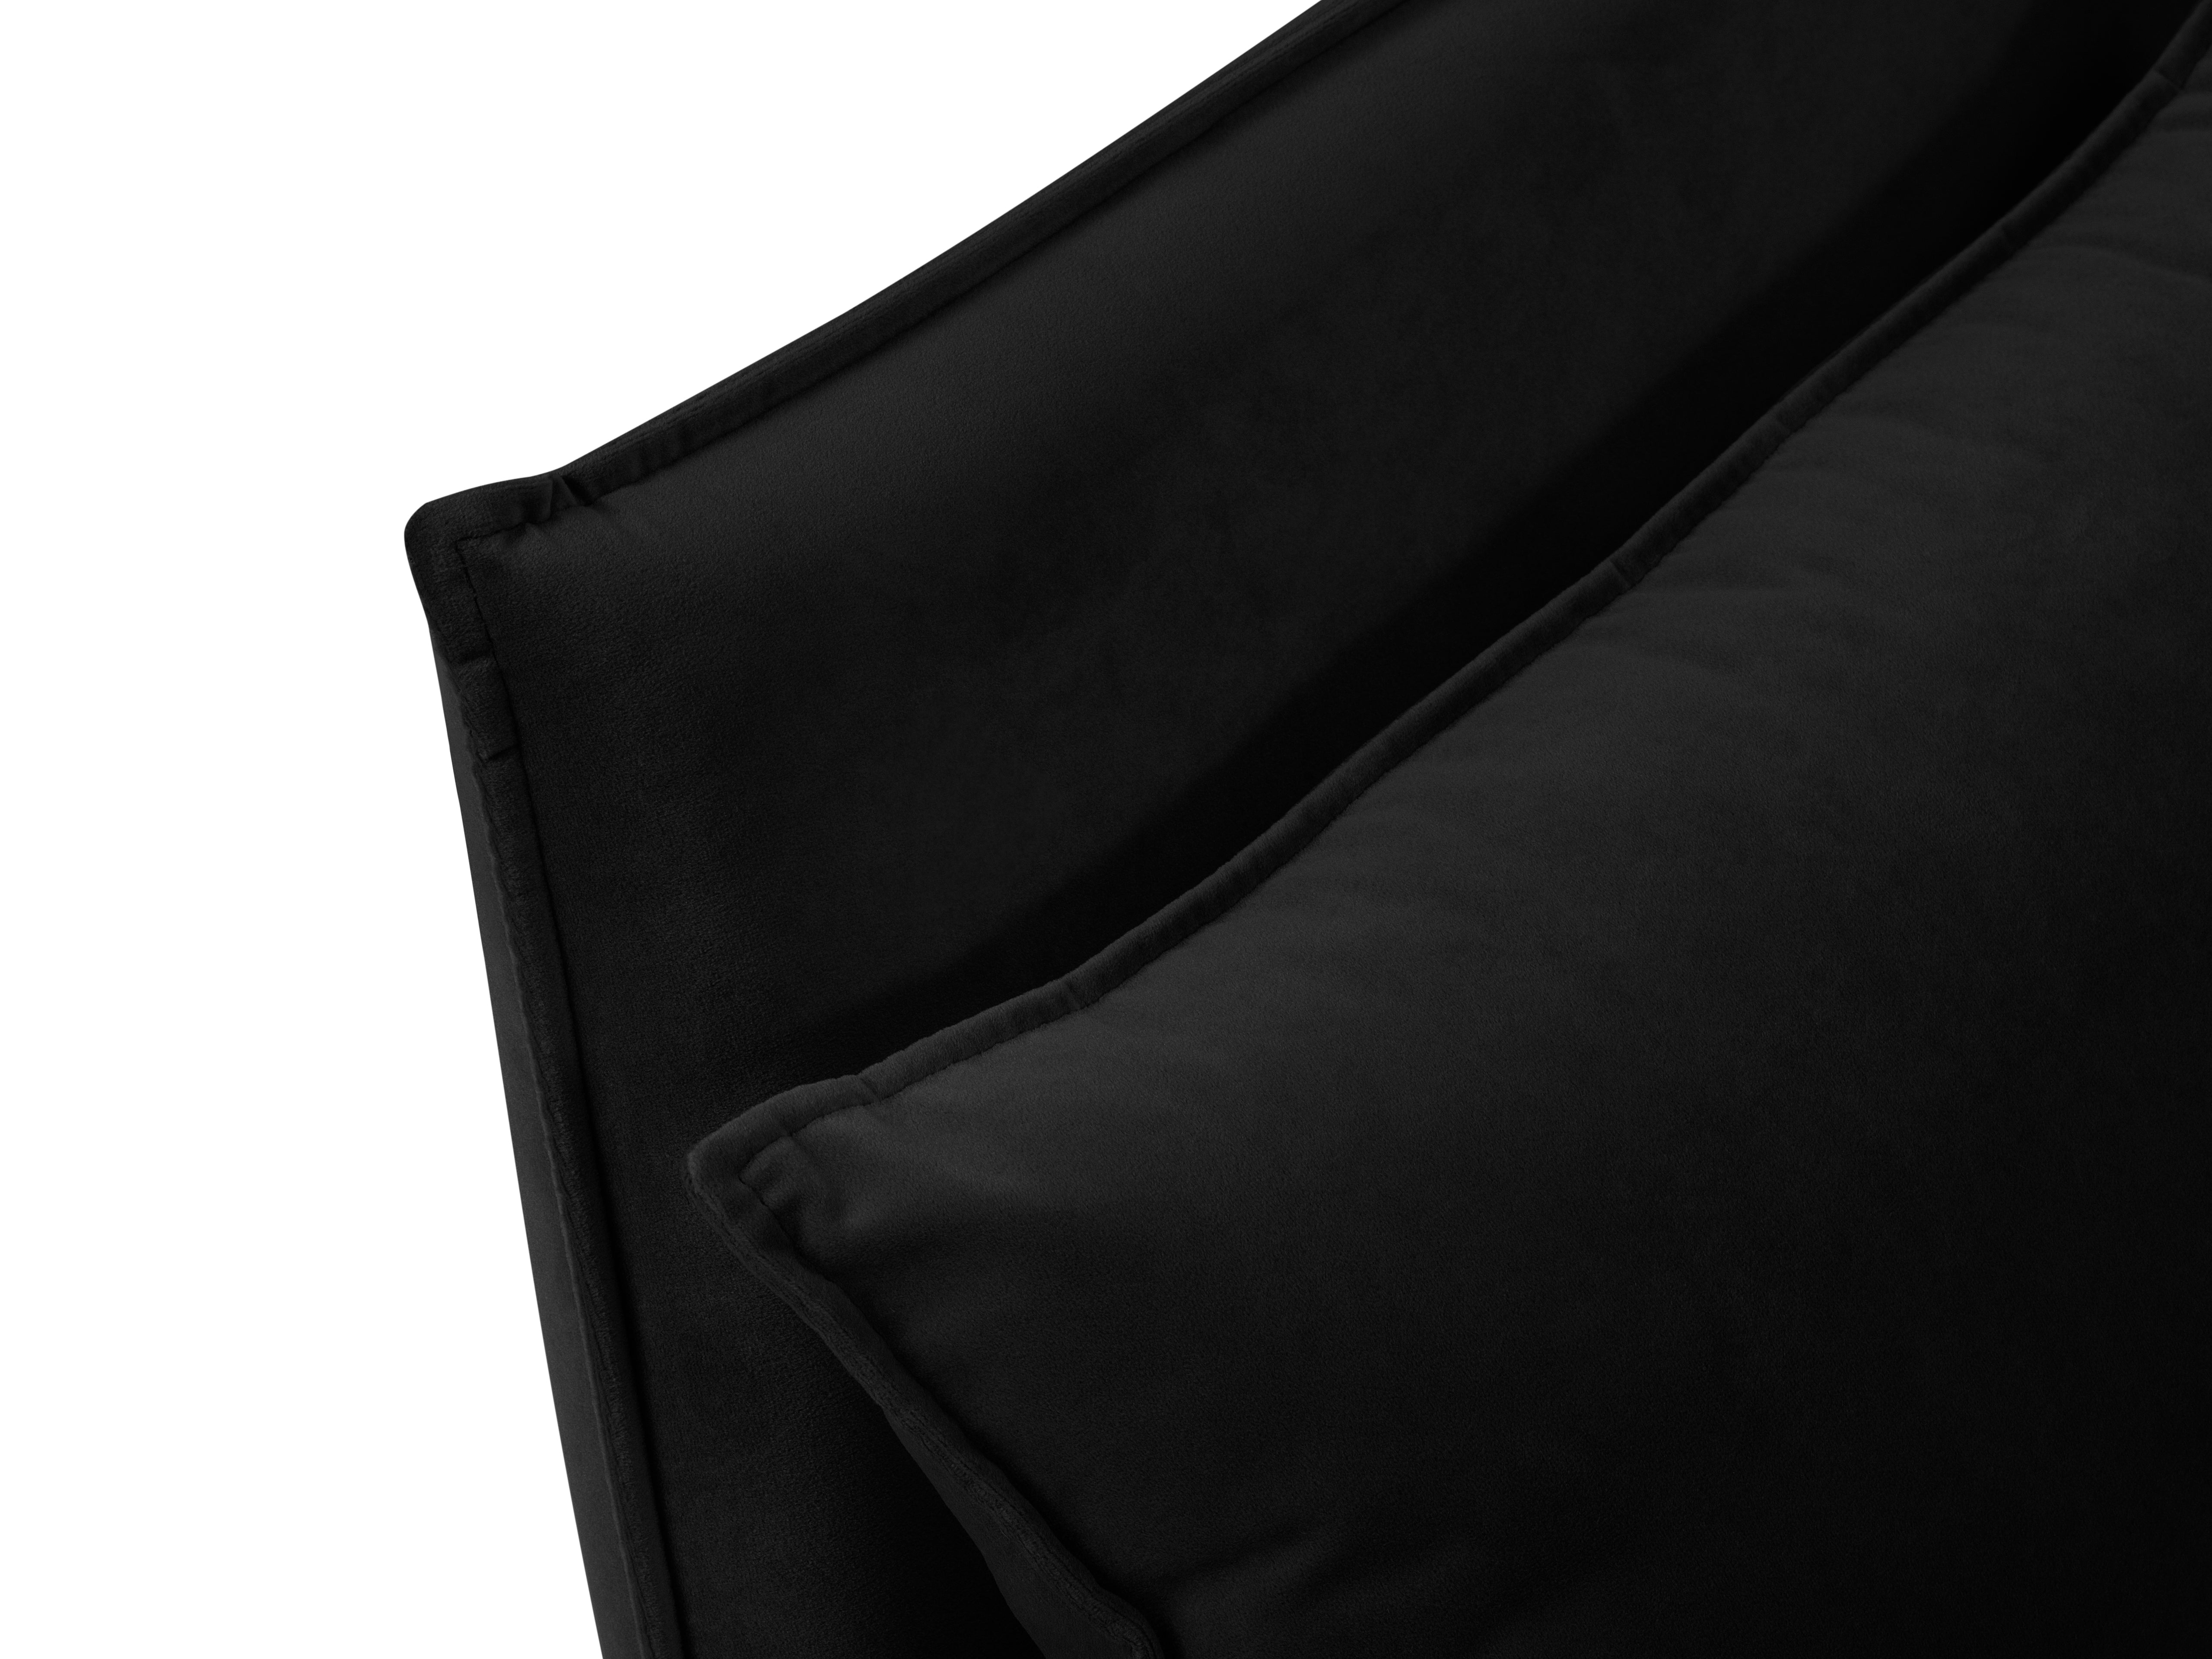 Velvet black fabric